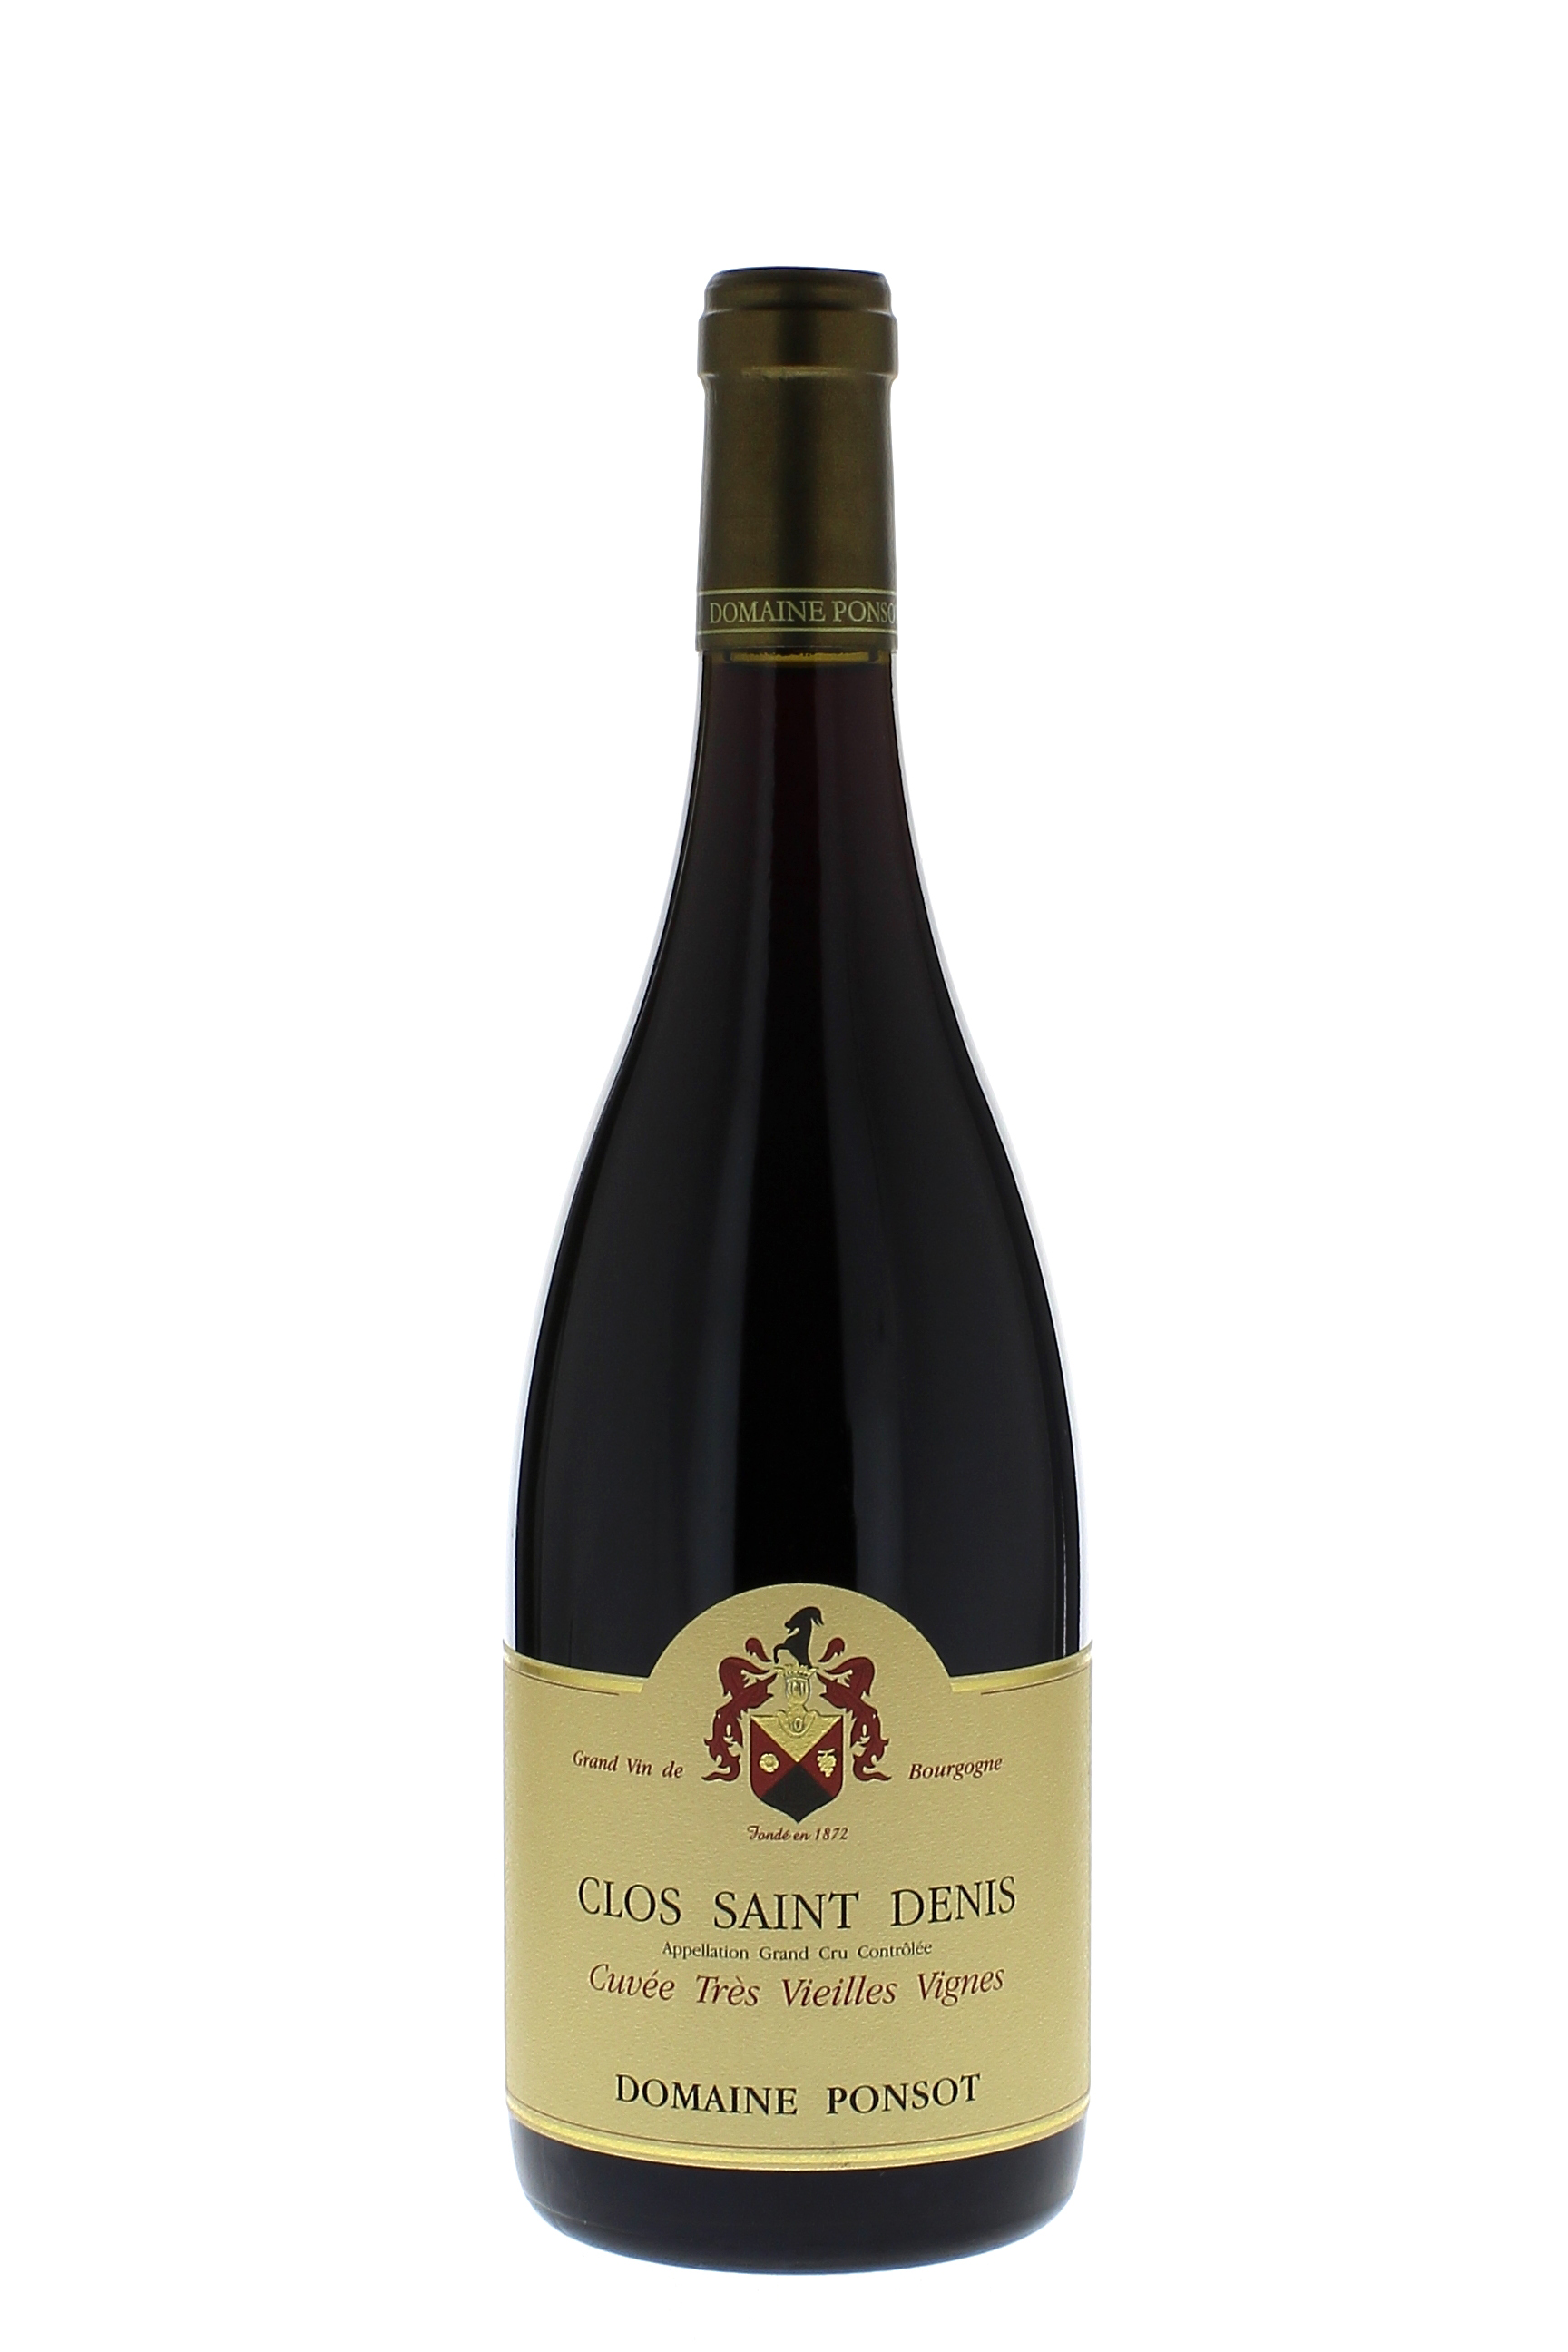 Clos saint denis trs vieilles vignes grand cru 2013 Domaine PONSOT, Bourgogne rouge